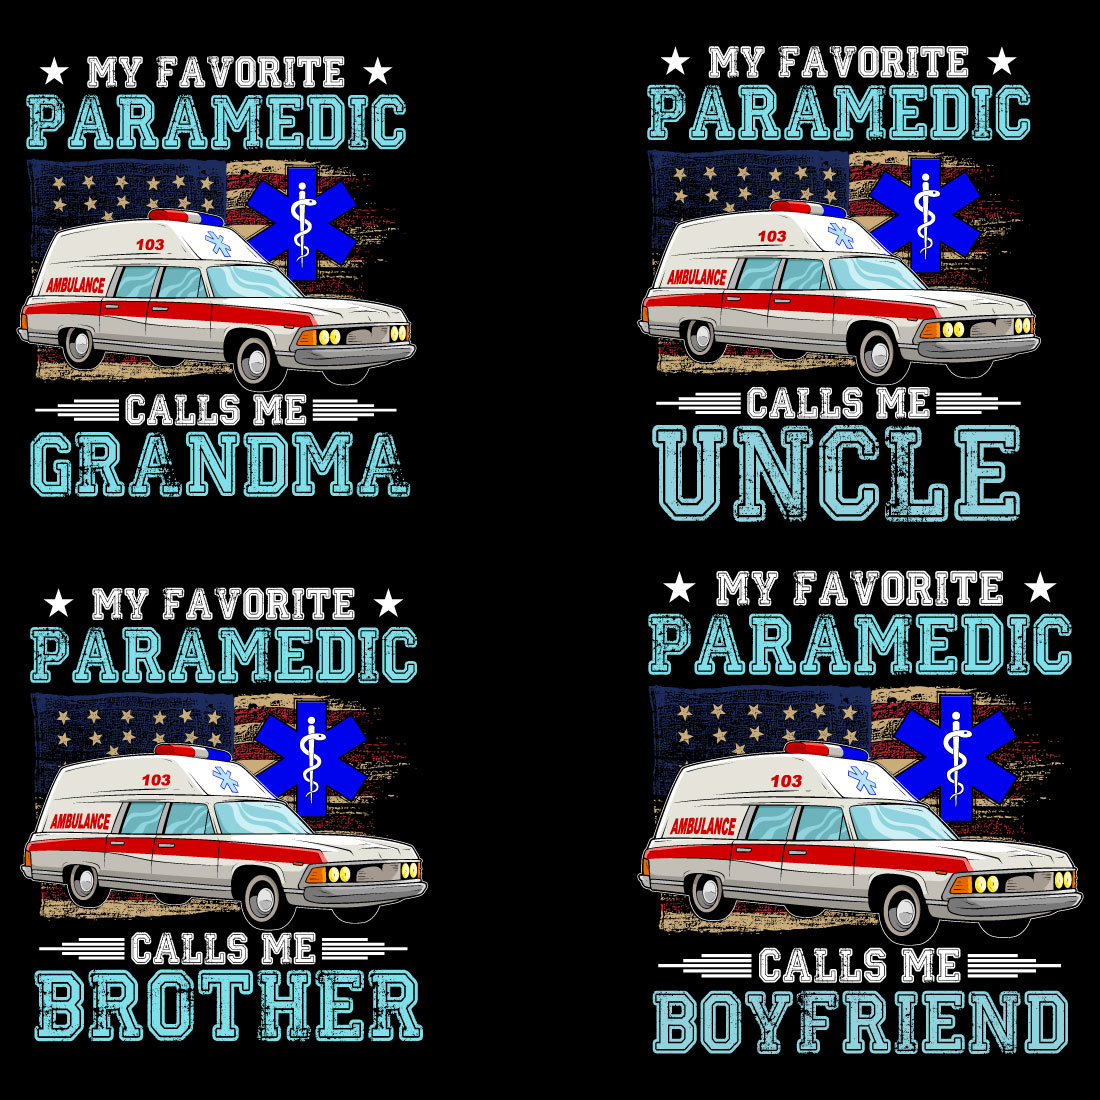 My Favorite Paramedic Calls Me T-Shirt Designs Bundle cover image.